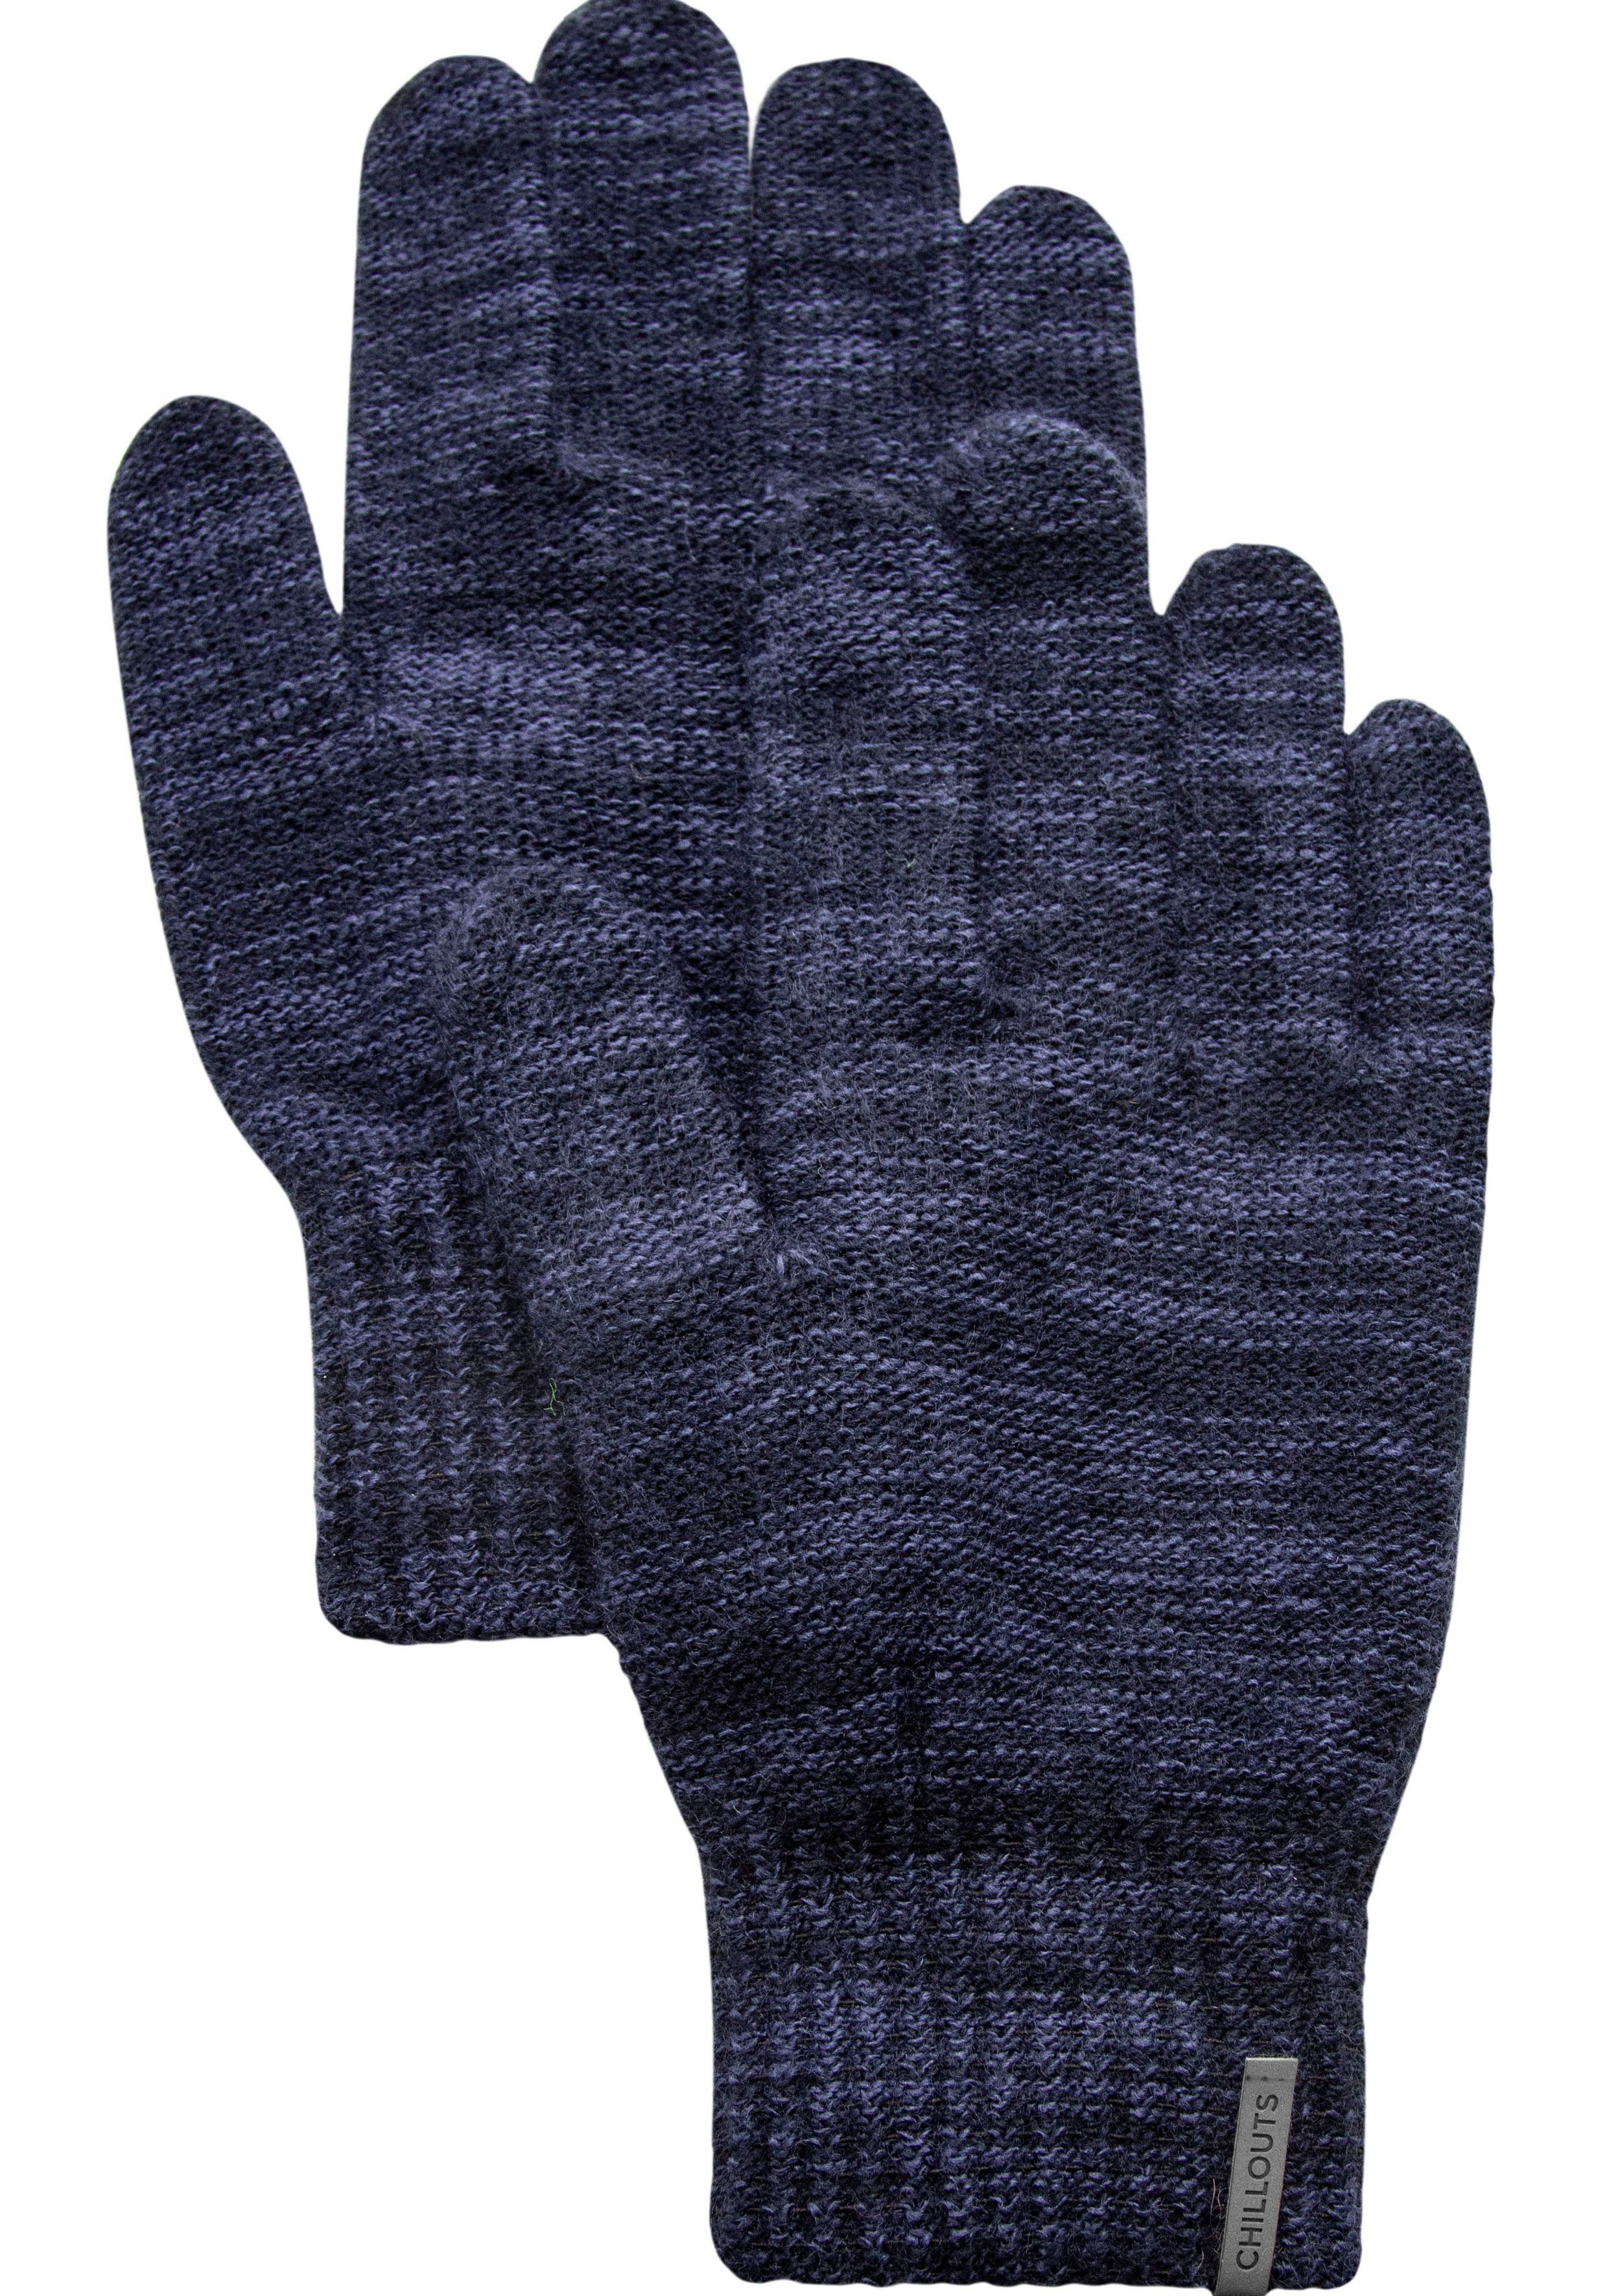 chillouts Strickhandschuhe Perry Glove Fingerhandschuhe gestrickt, wärmend navy melange | Strickhandschuhe